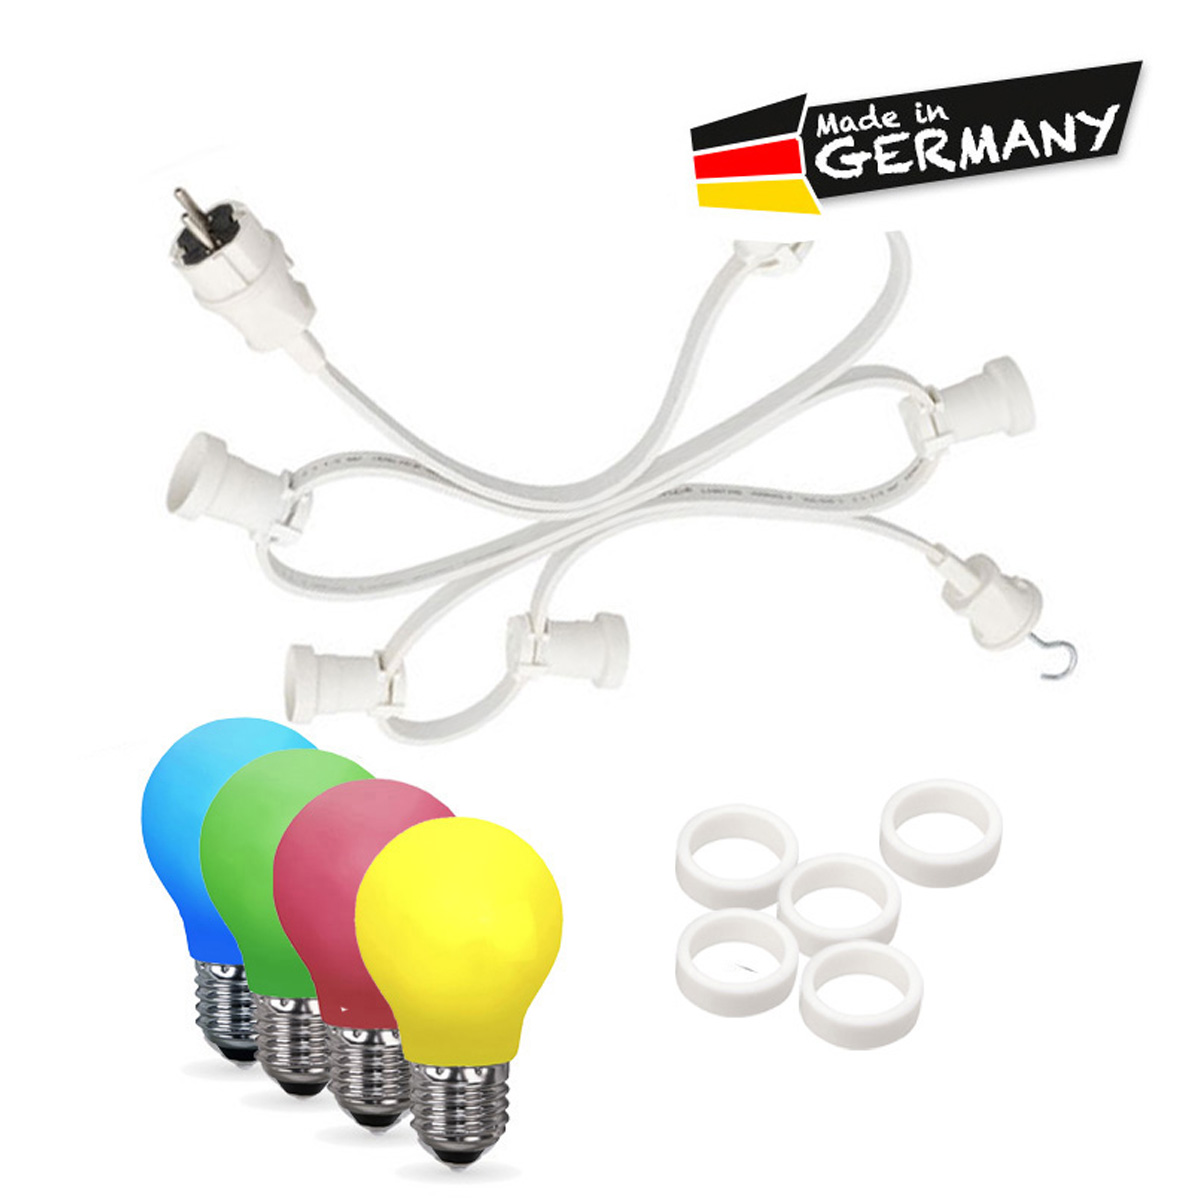 Illu-/Partylichterkette 10m | Außenlichterkette weiß | Made in Germany | 20 x bunte LED Tropfenlampe